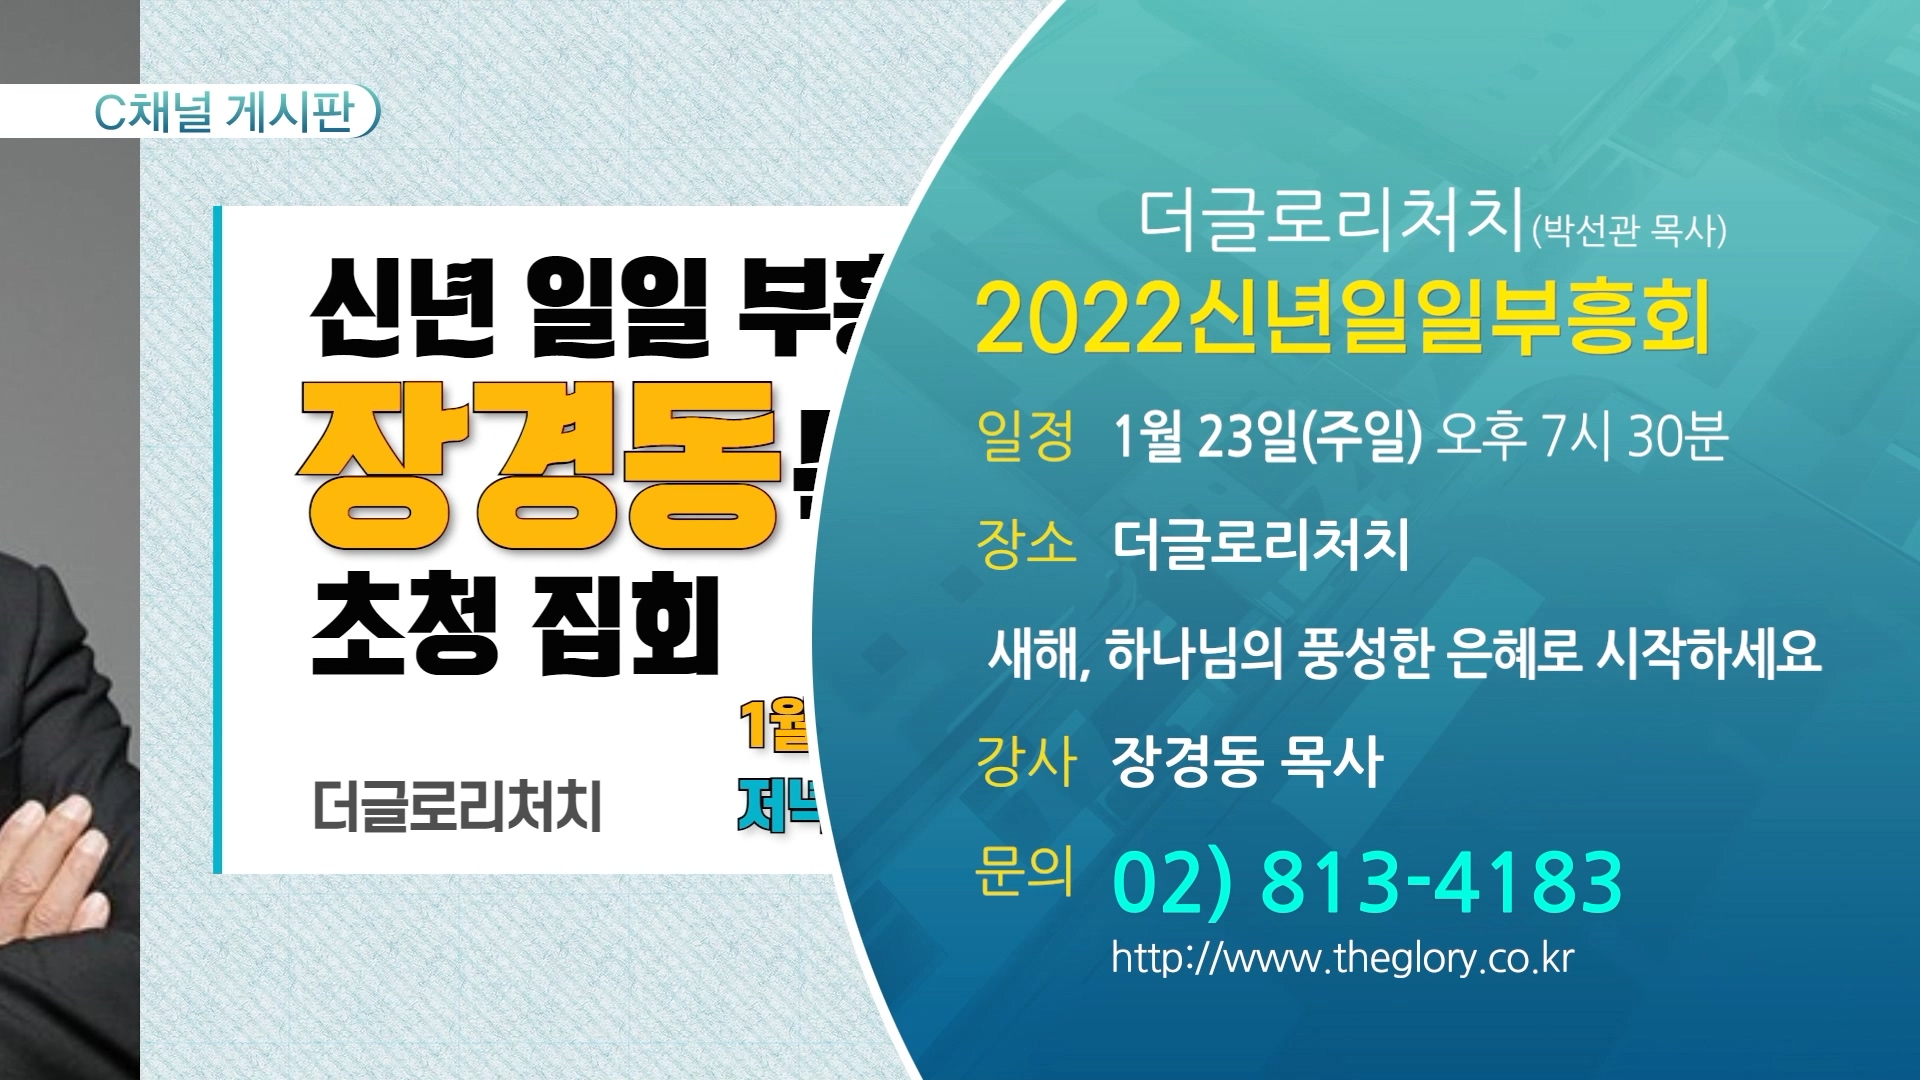 2022신년일일부흥회 (더글로리처치(박선관 목사)) - 1월 23일(주일) 오후 7시 30분